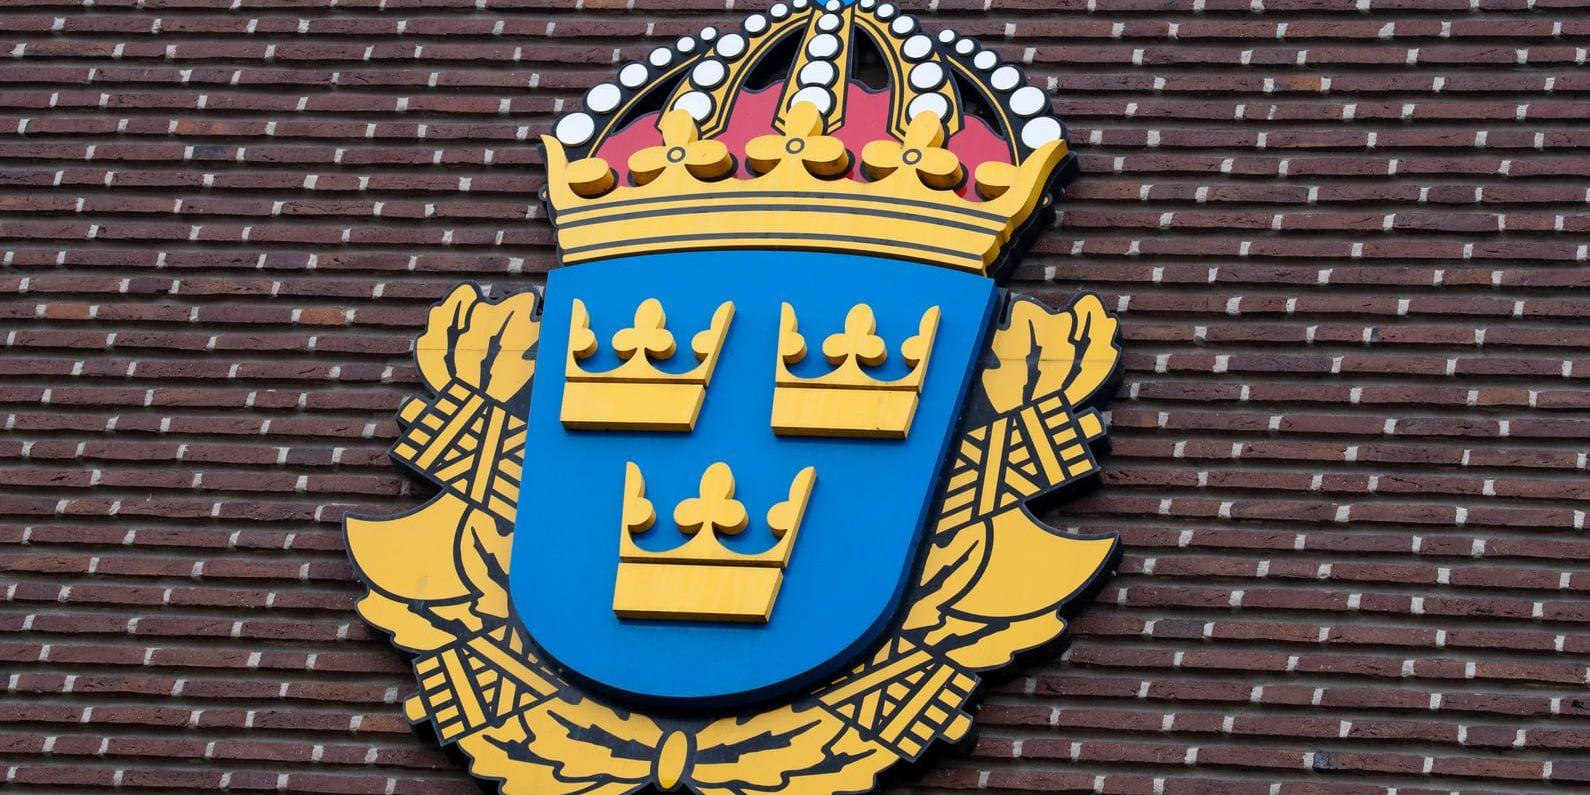 Polisstationen i Kramfors stängdes efter att personalen upptäckt ett kuvert med vitt pulver. Strax före 22 gjordes bedömningen att pulvret var ofarligt.